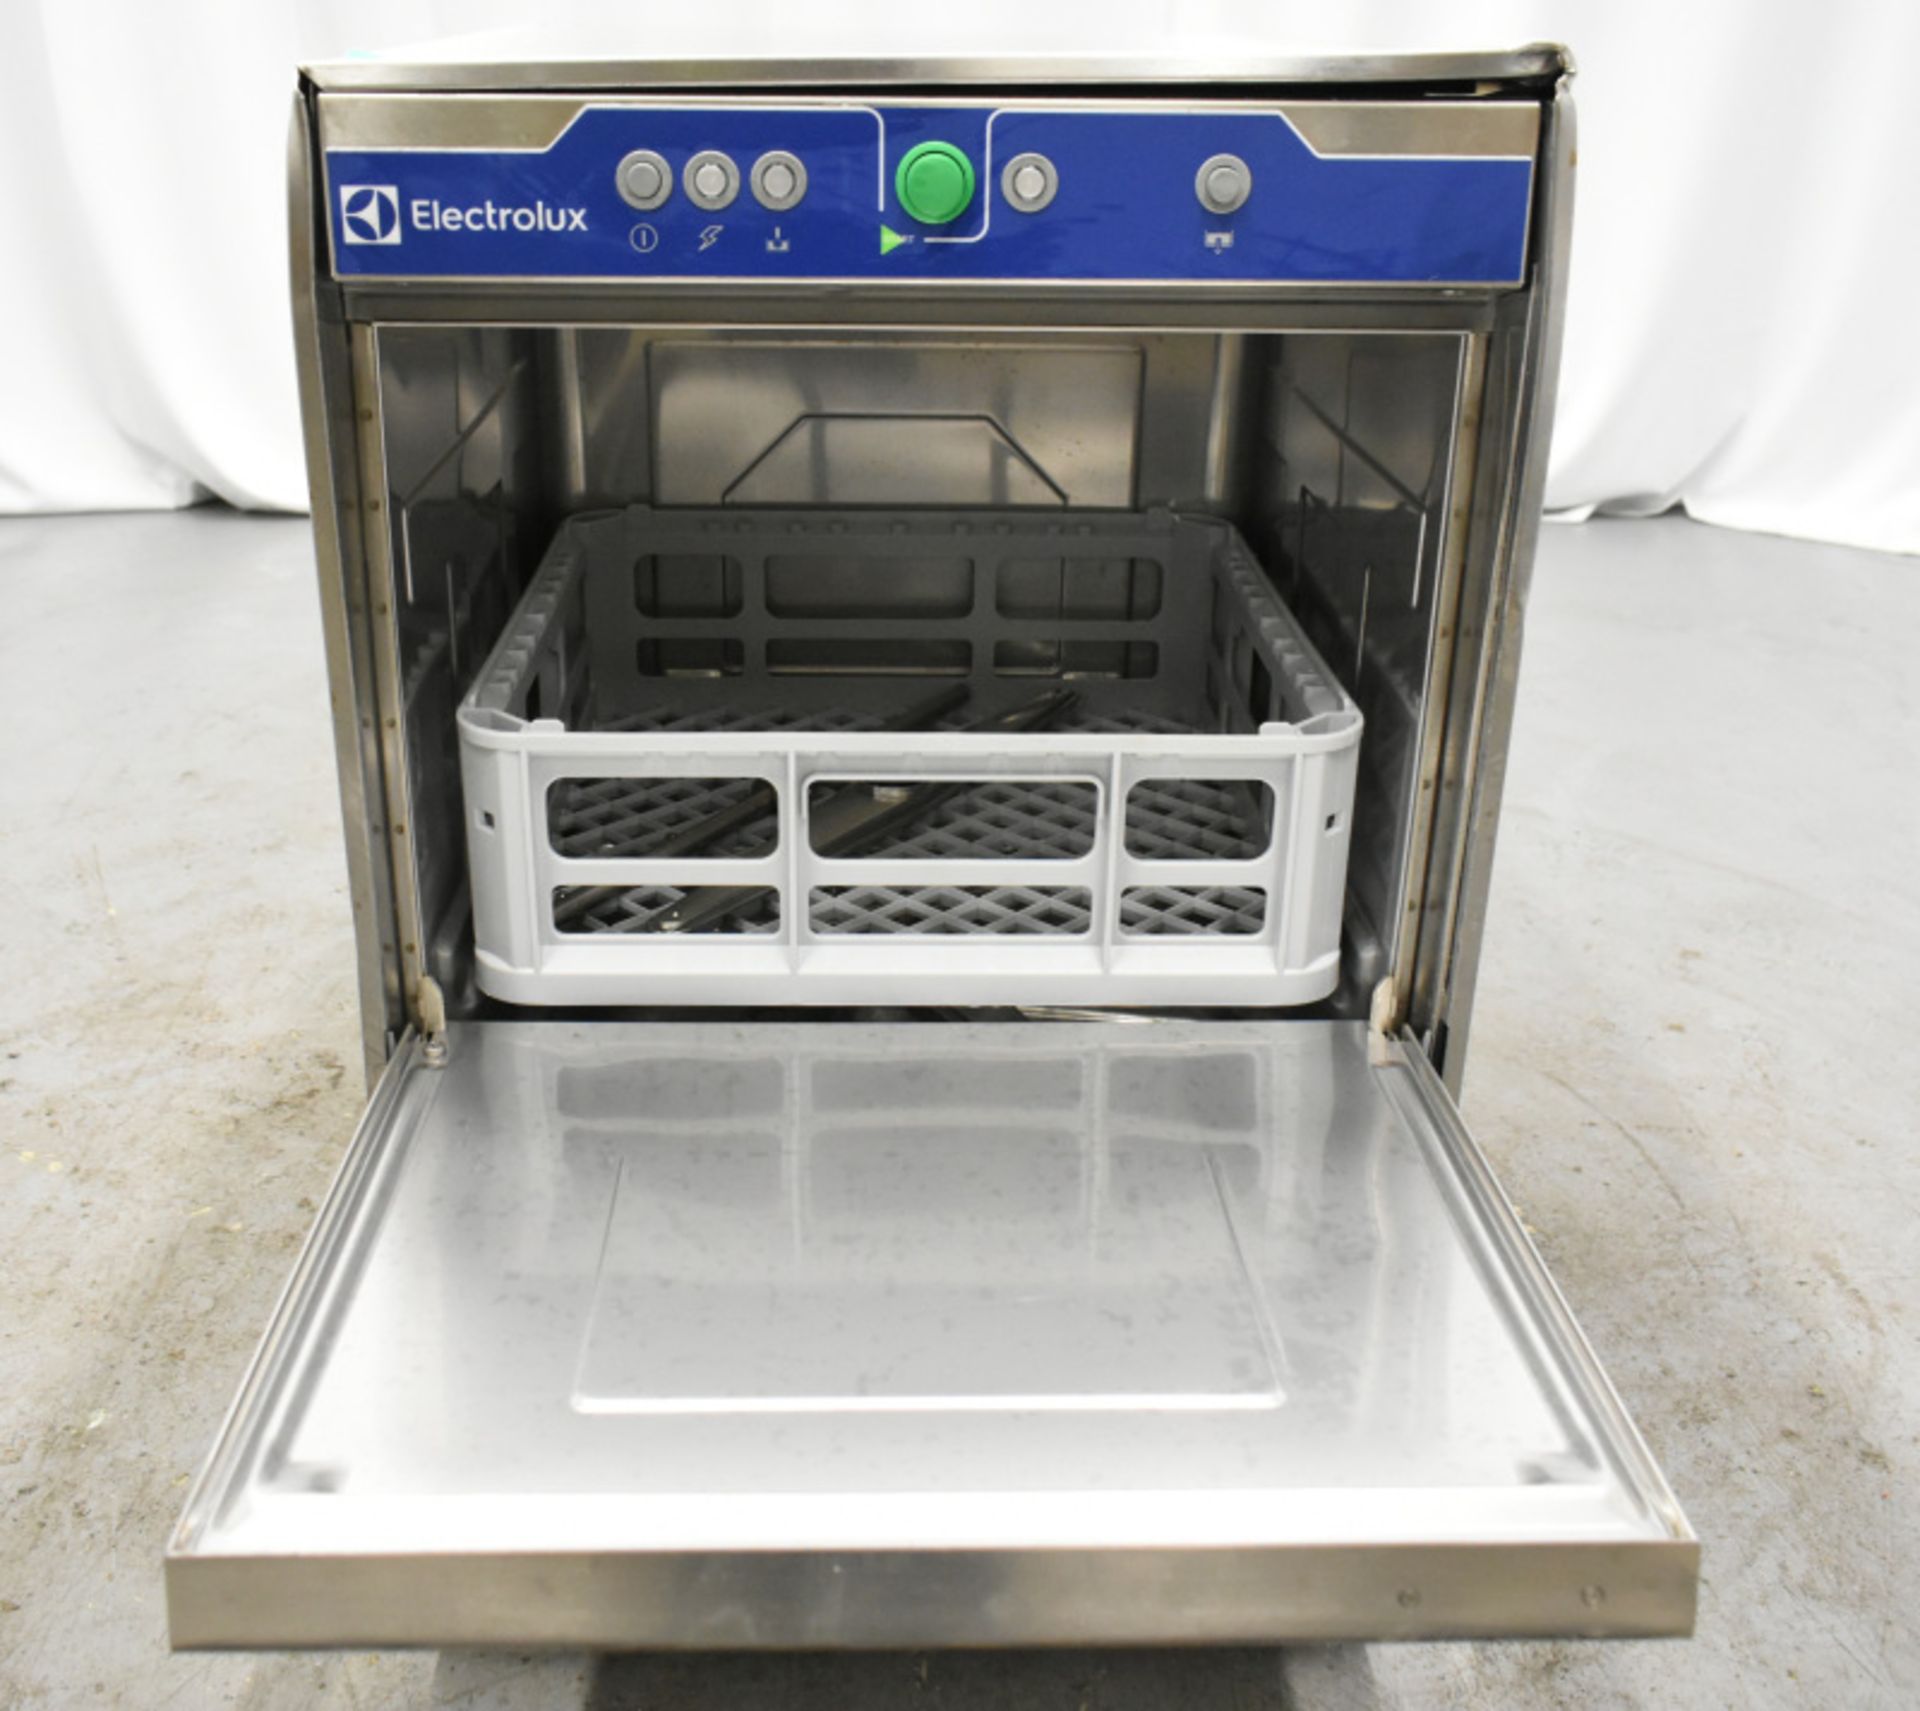 Electrolux dishwasher - Image 2 of 12